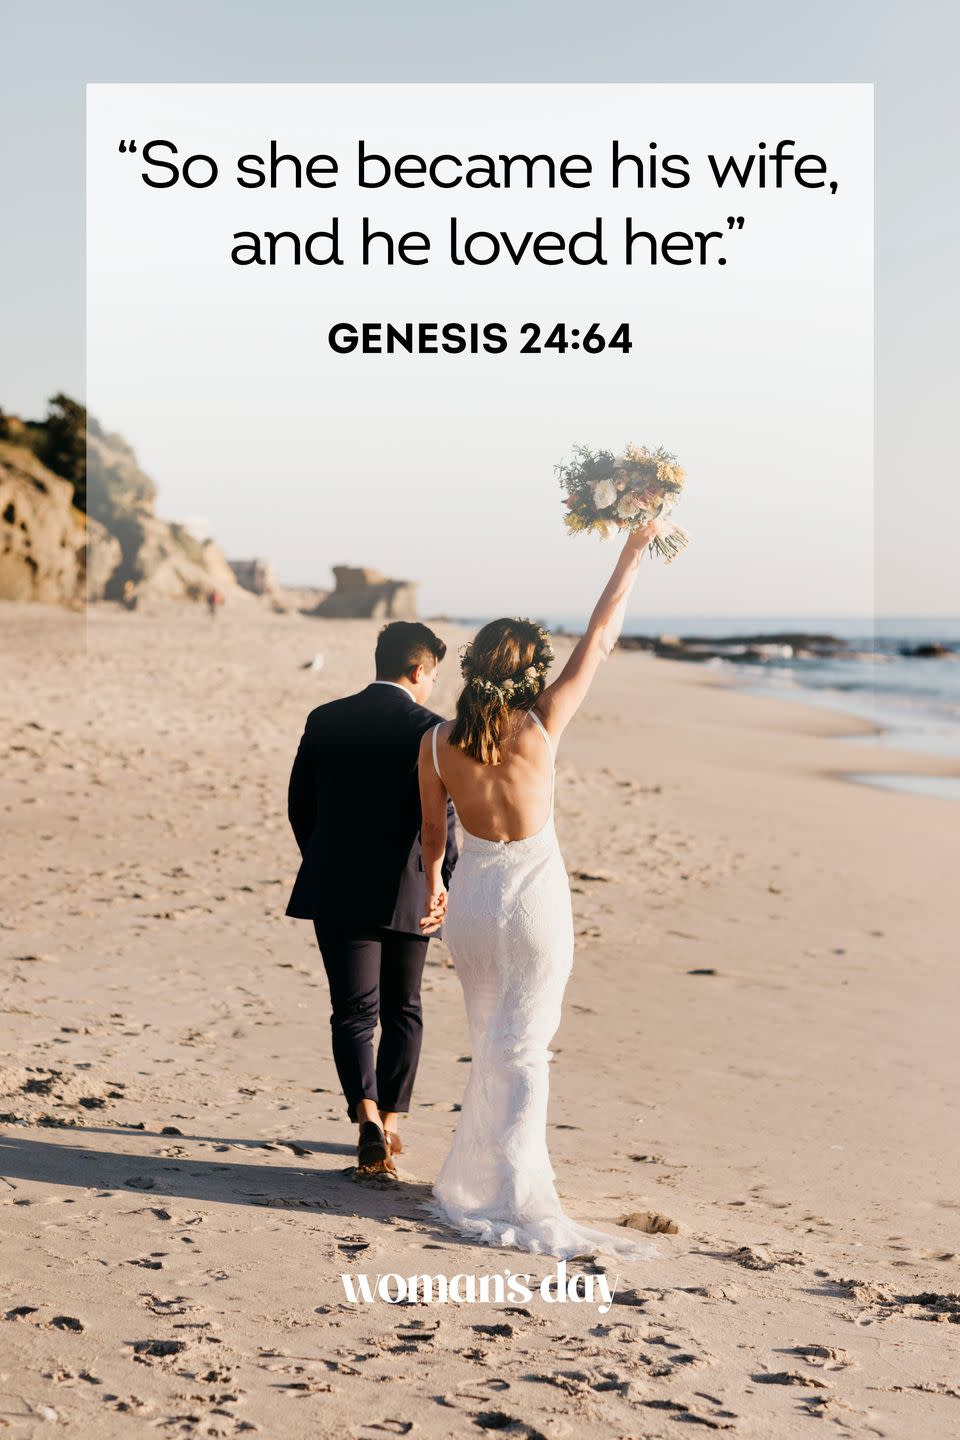 20) Genesis 24:64